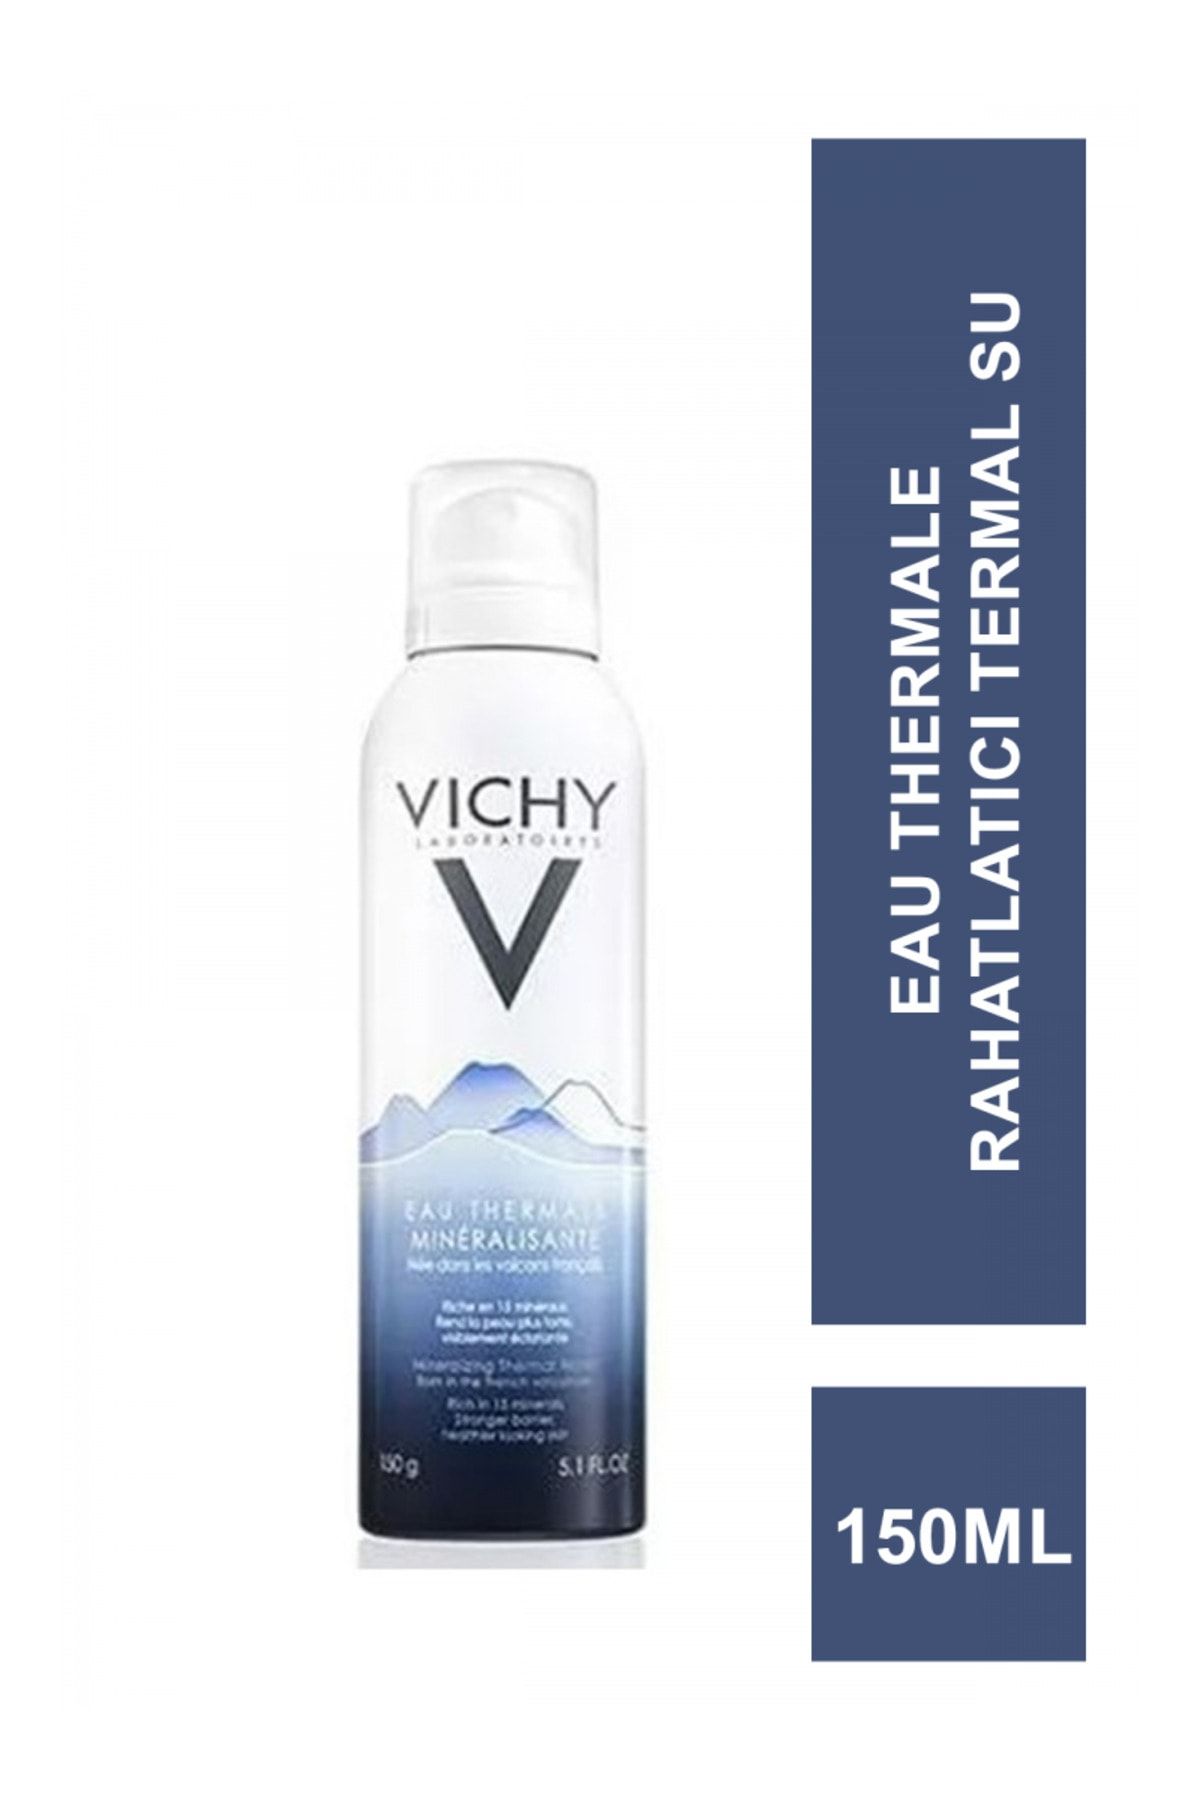 Vichy Hassas Ciltleri Rahatlatıcı, Koruyucu Ve Güçlendirici Mineralli Termal Suyu 150 ml